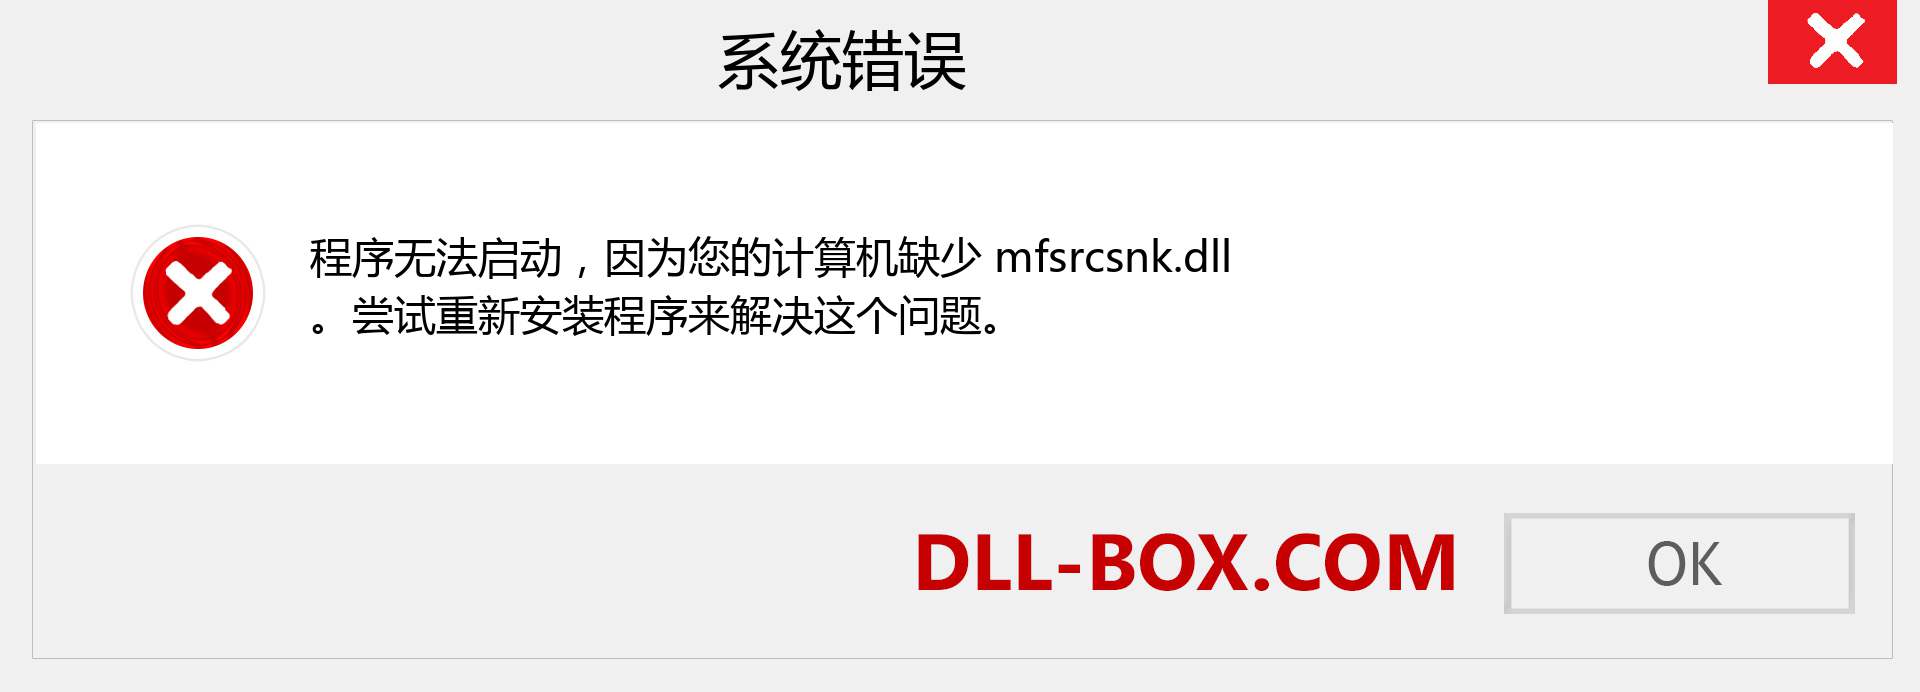 mfsrcsnk.dll 文件丢失？。 适用于 Windows 7、8、10 的下载 - 修复 Windows、照片、图像上的 mfsrcsnk dll 丢失错误